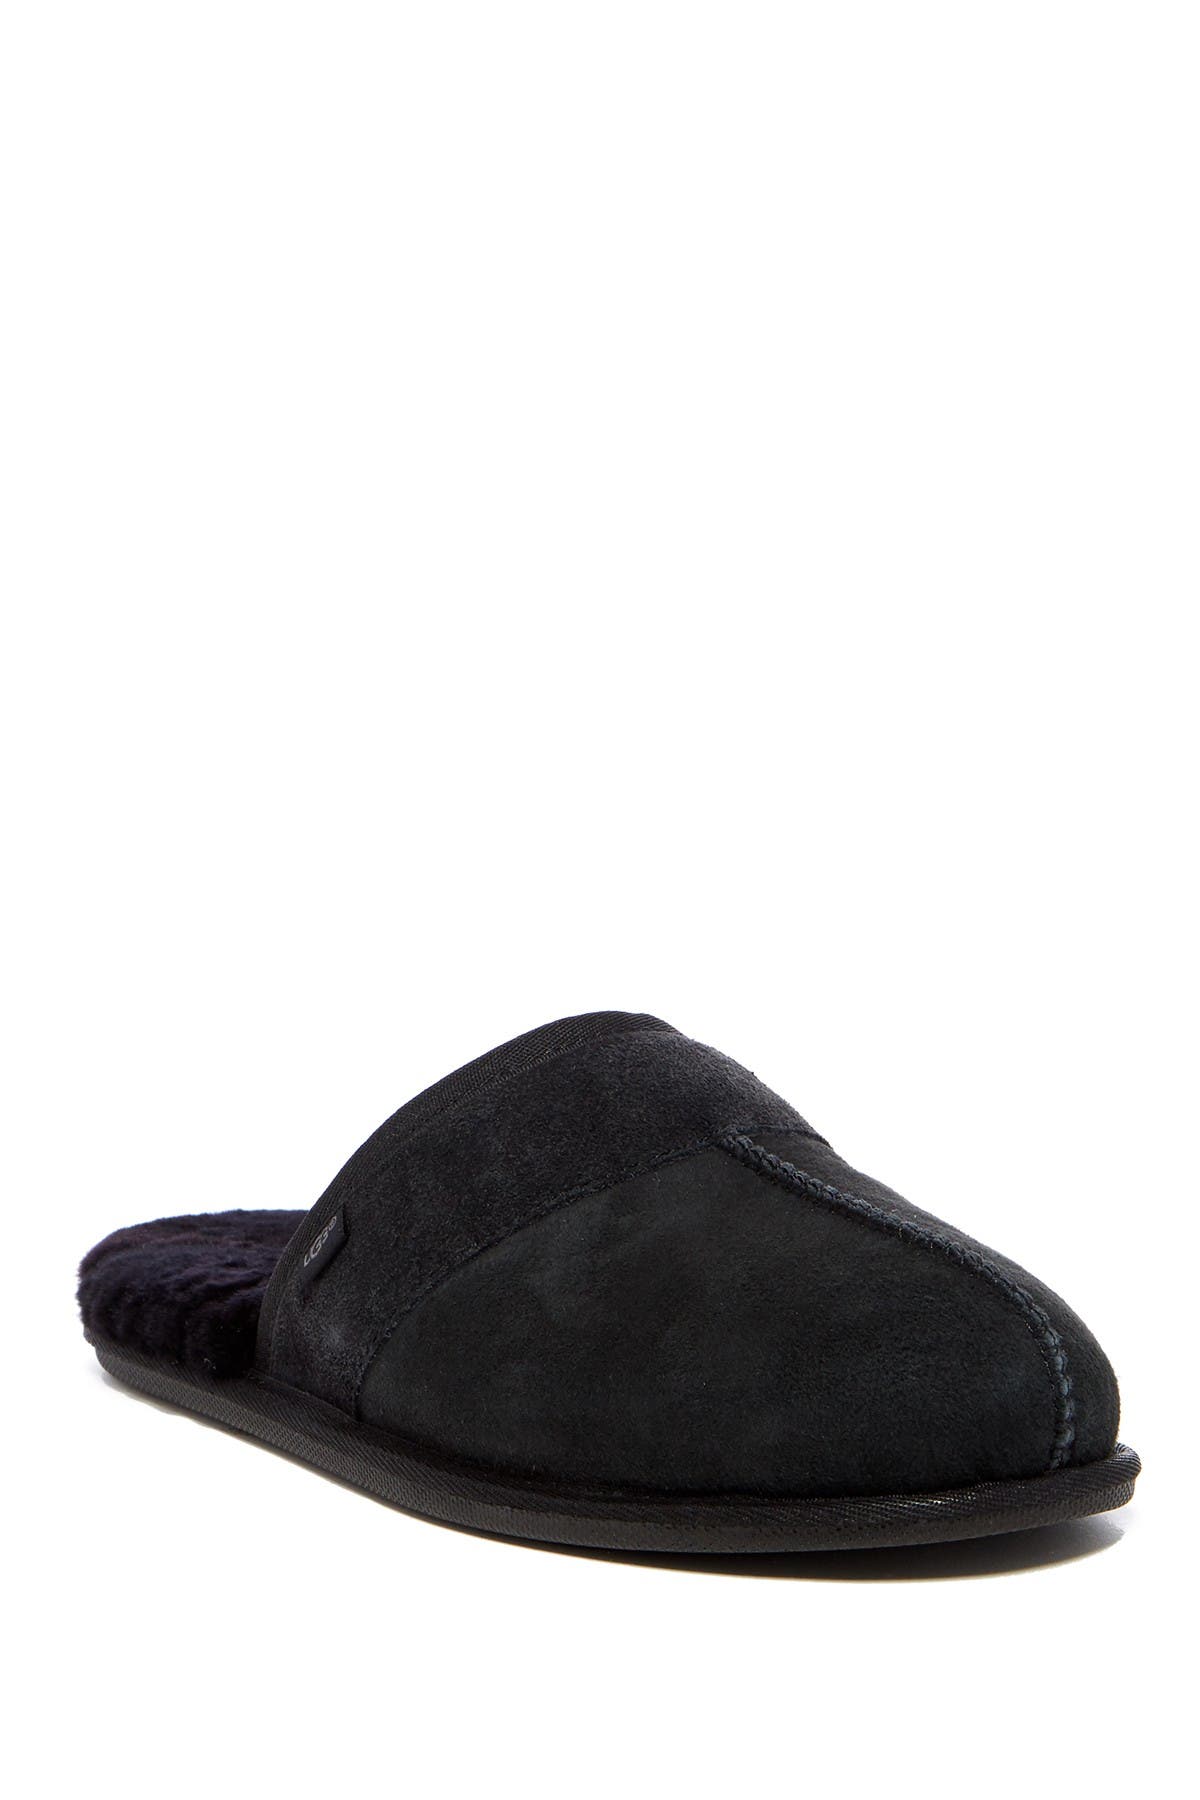 mens black ugg slippers